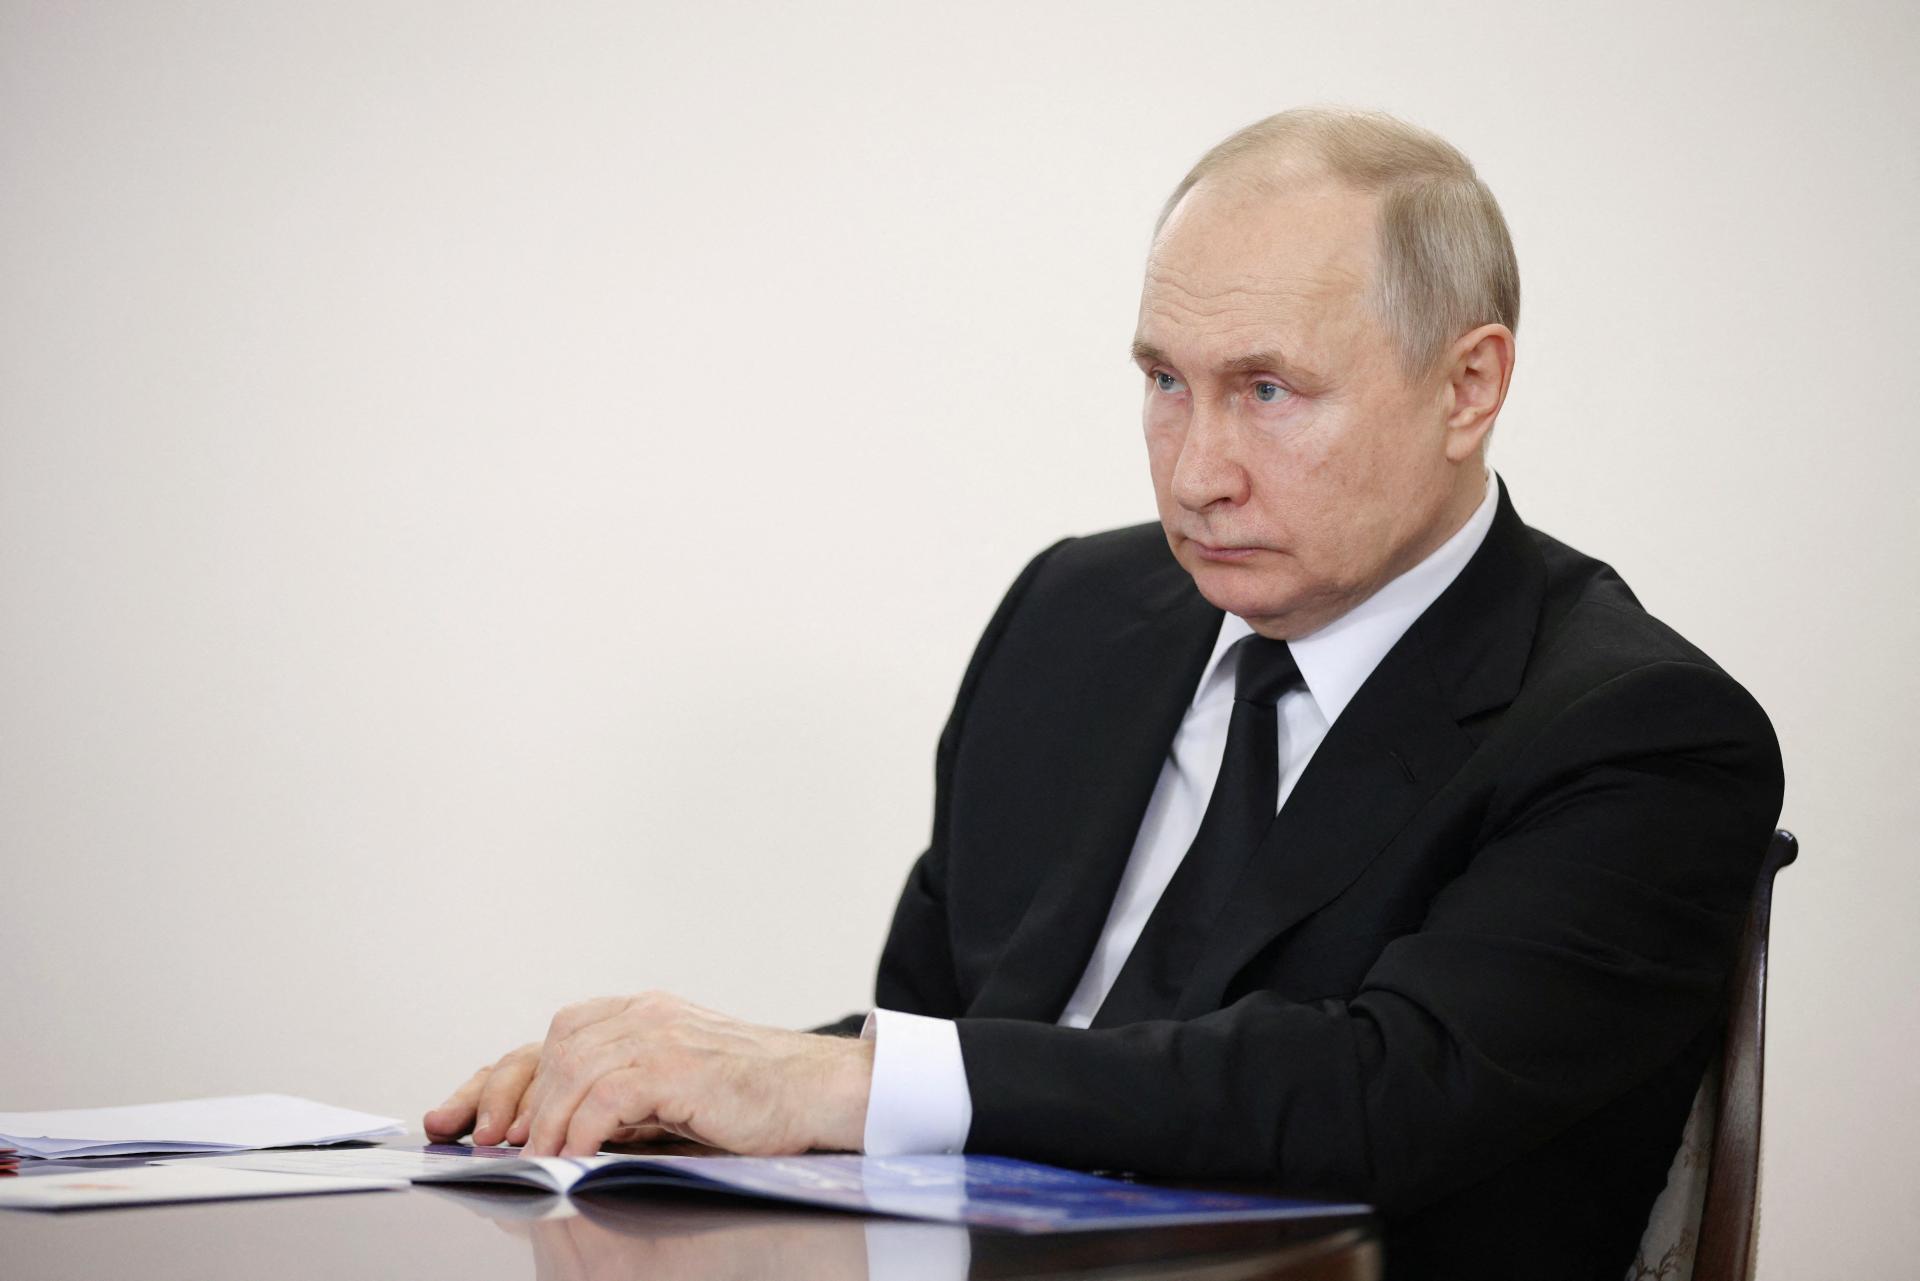 Ruská ekonomika sa vlani prepadla menej, ako jej mnohí prerokovali, tvrdí Putin